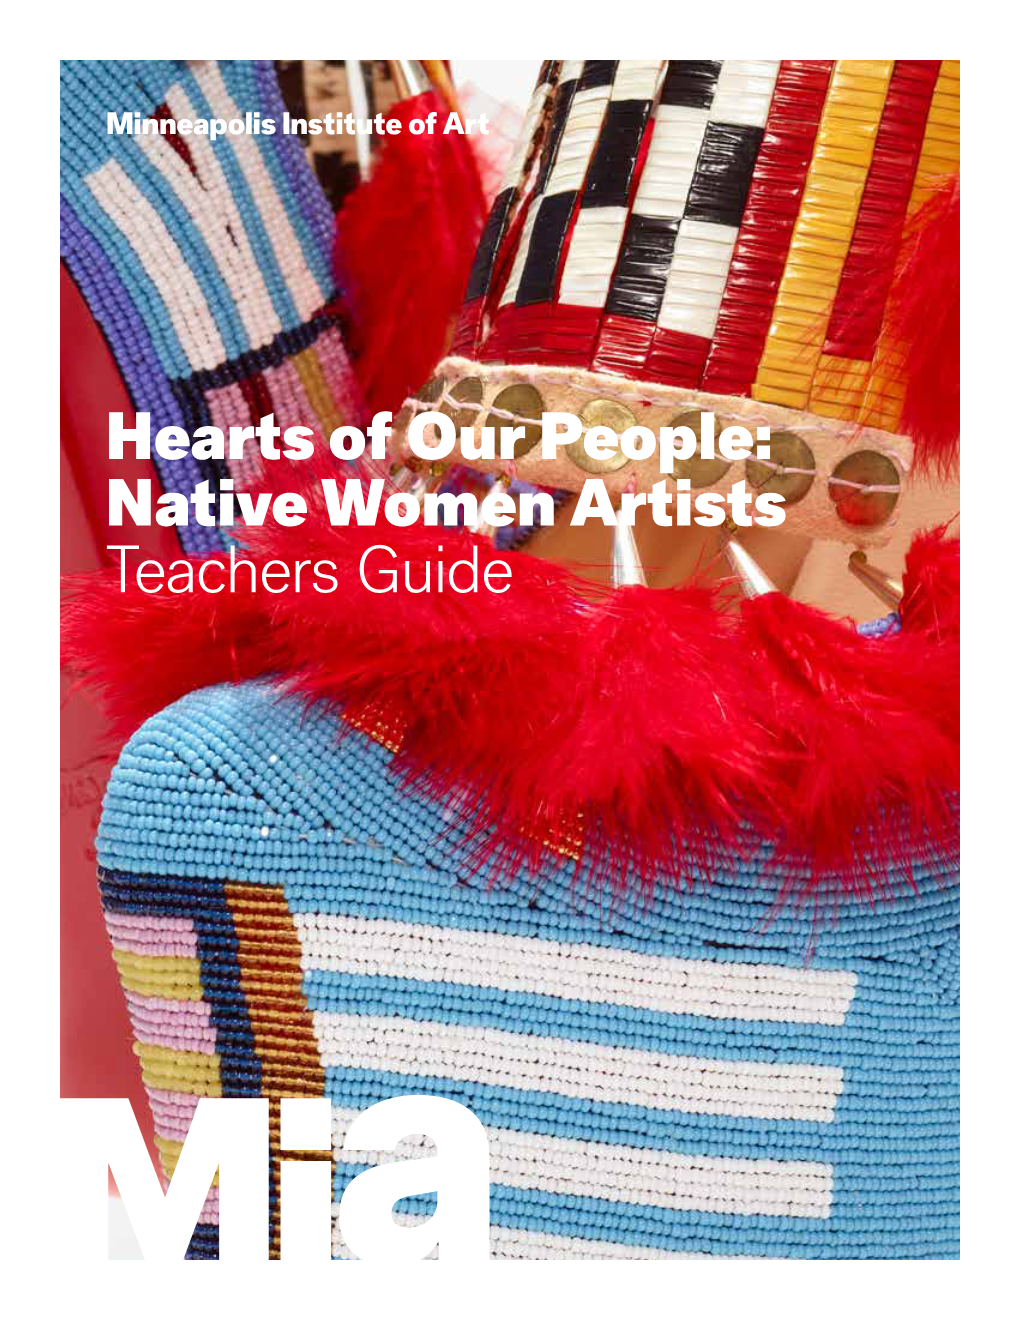 Native Women Artists Teachers Guide